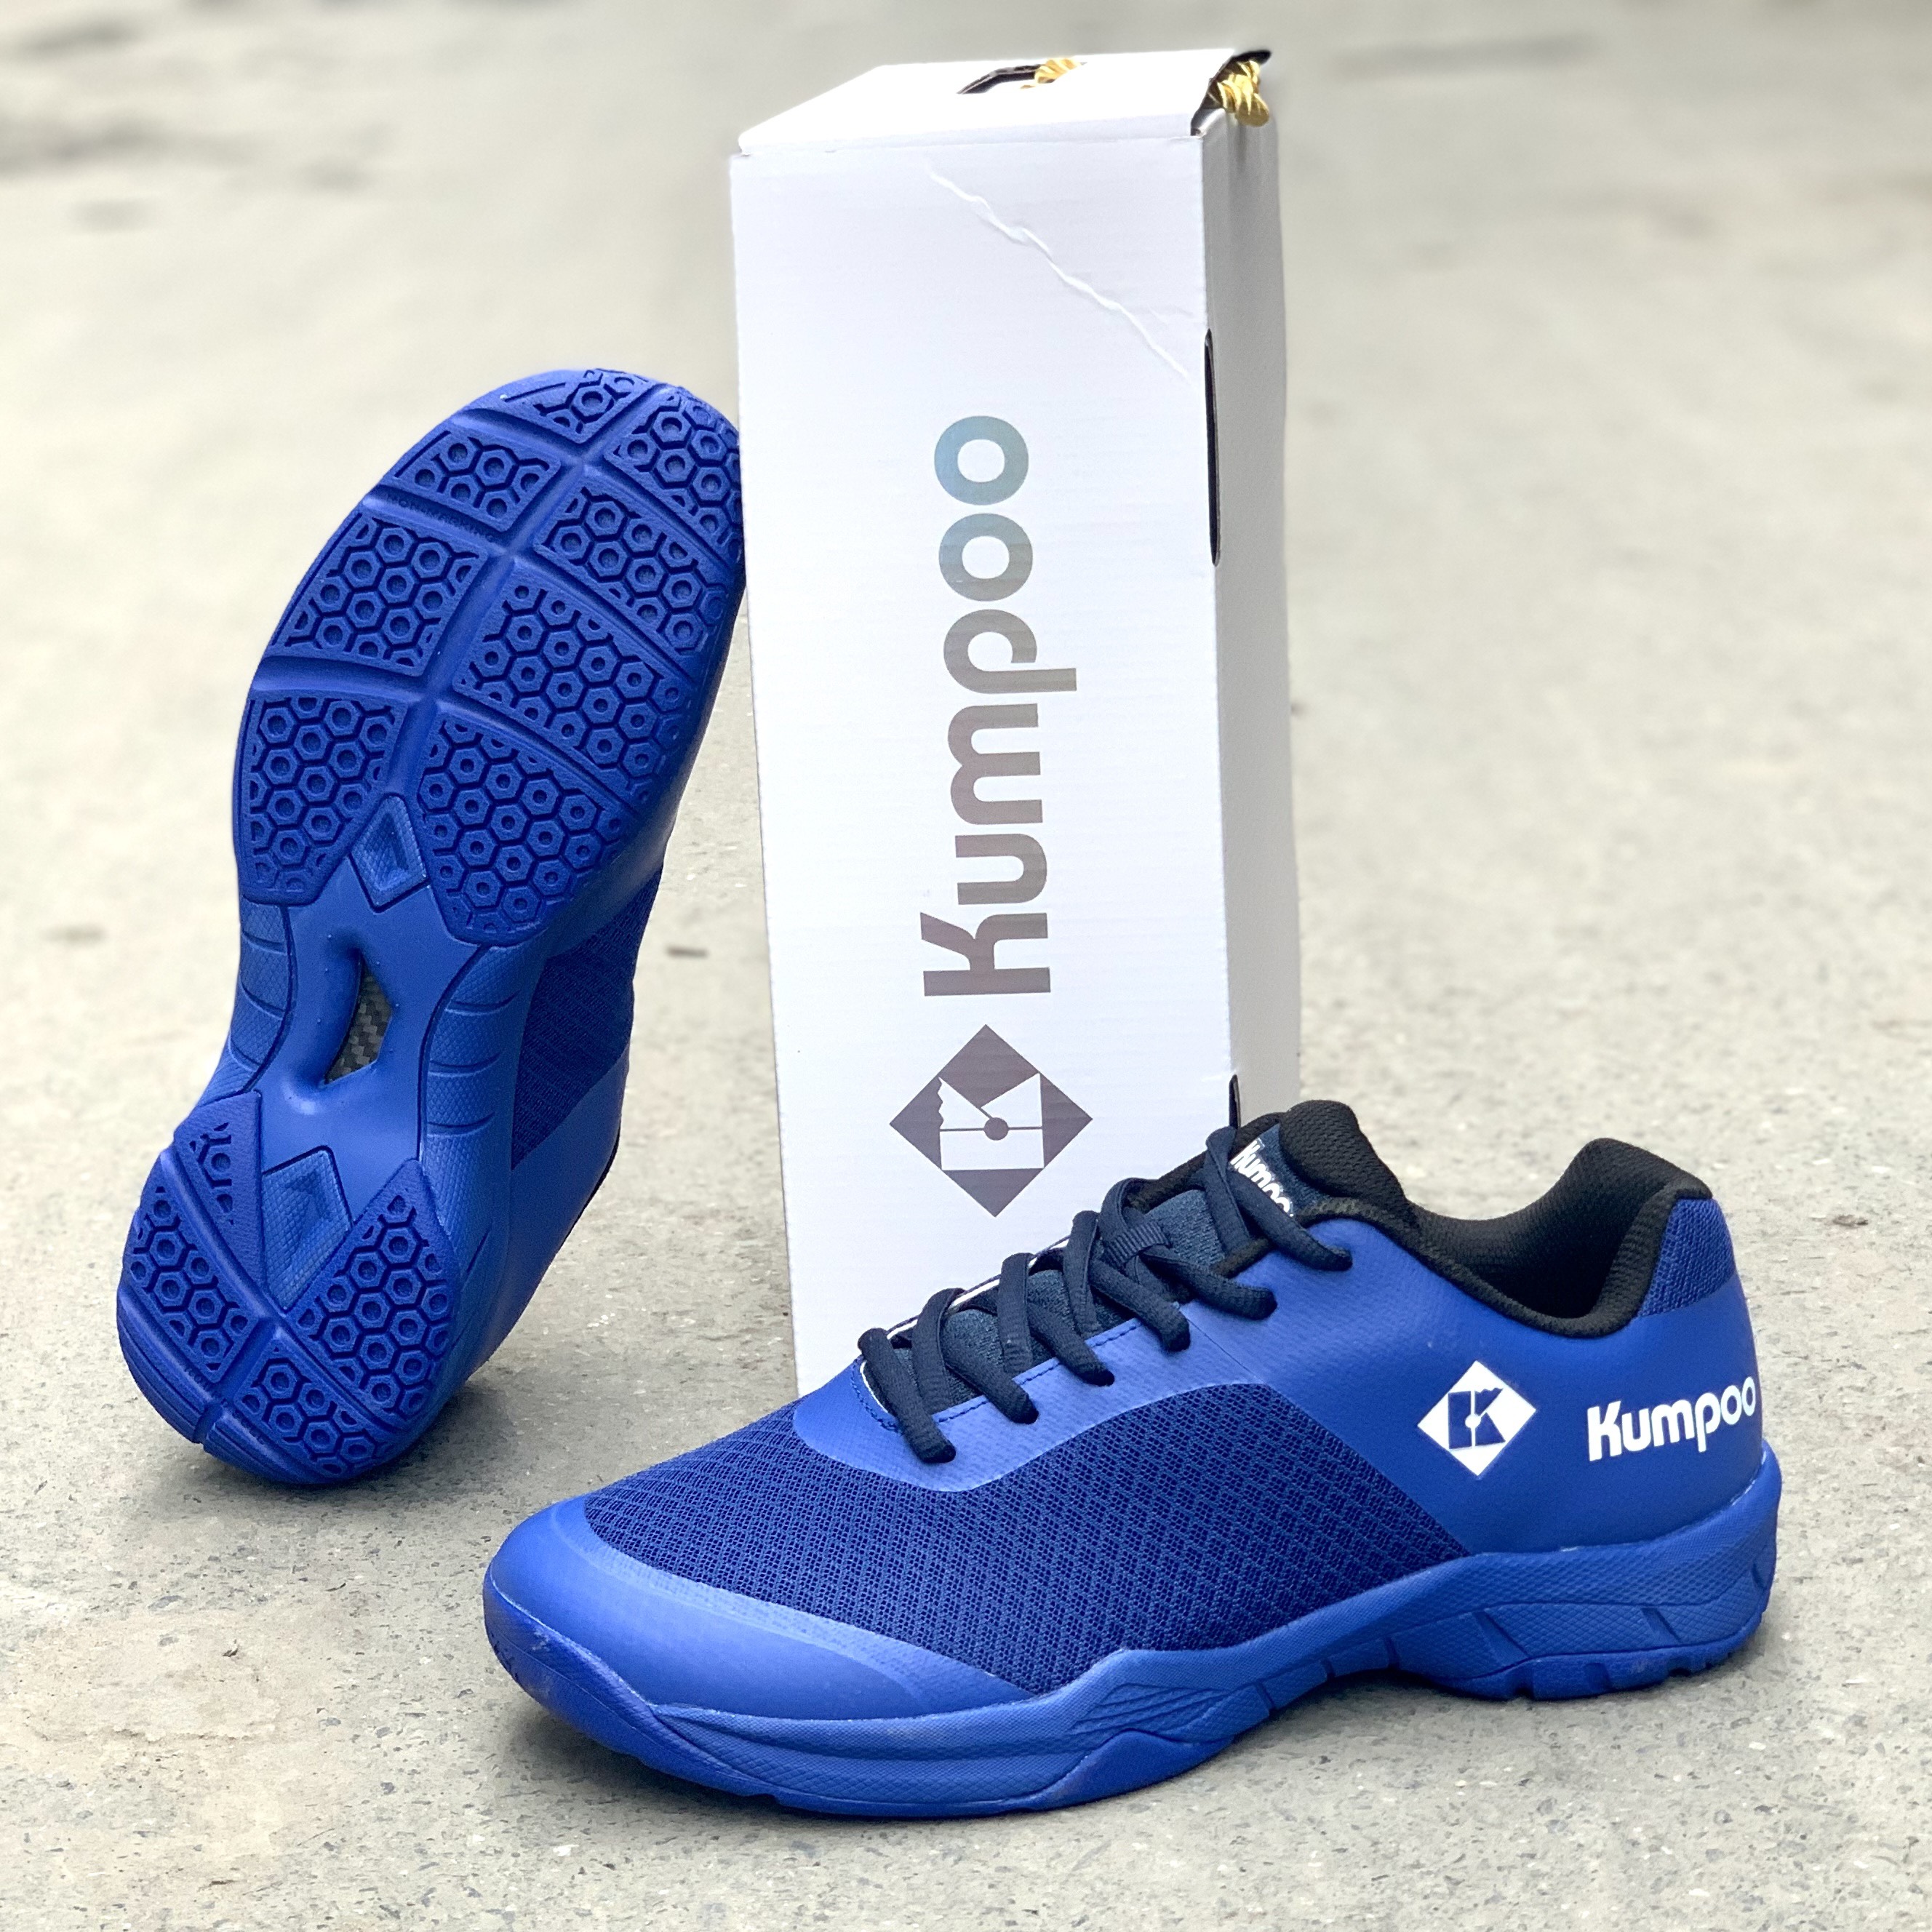 Giày bóng chuyền Kumpoo KHD43 (đế kếp 2 lớp bám sàn và siêu bền cho sân bê tông)